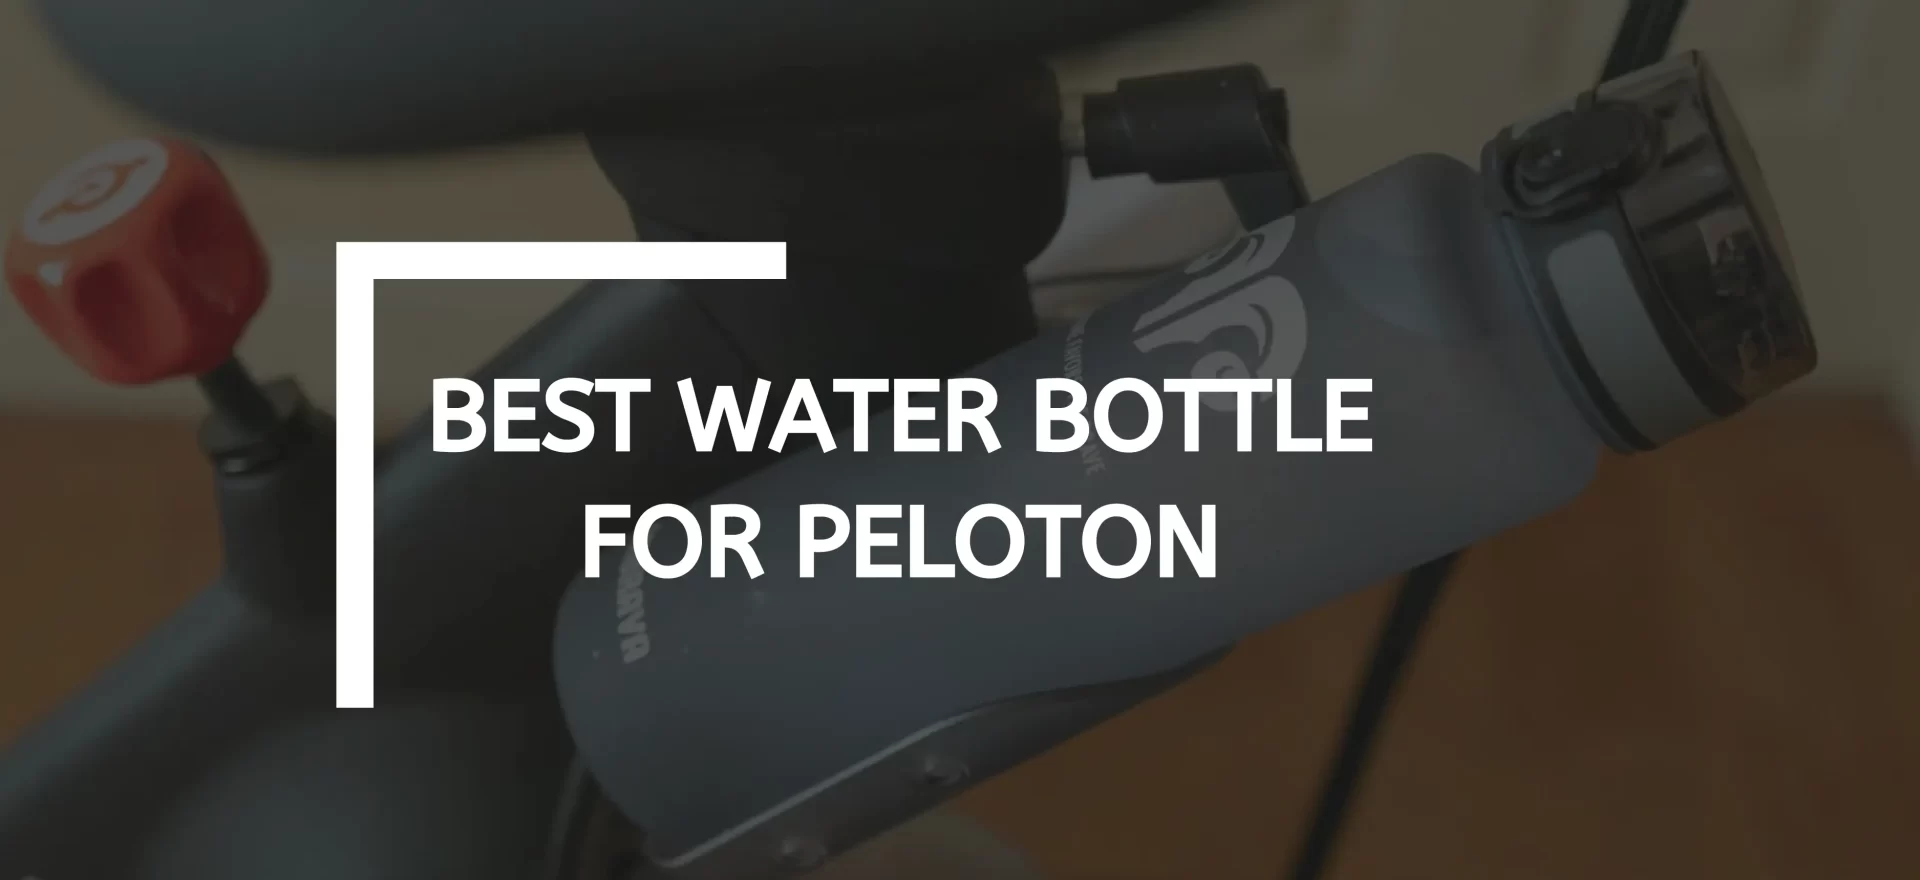 Best Water Bottle For Peloton